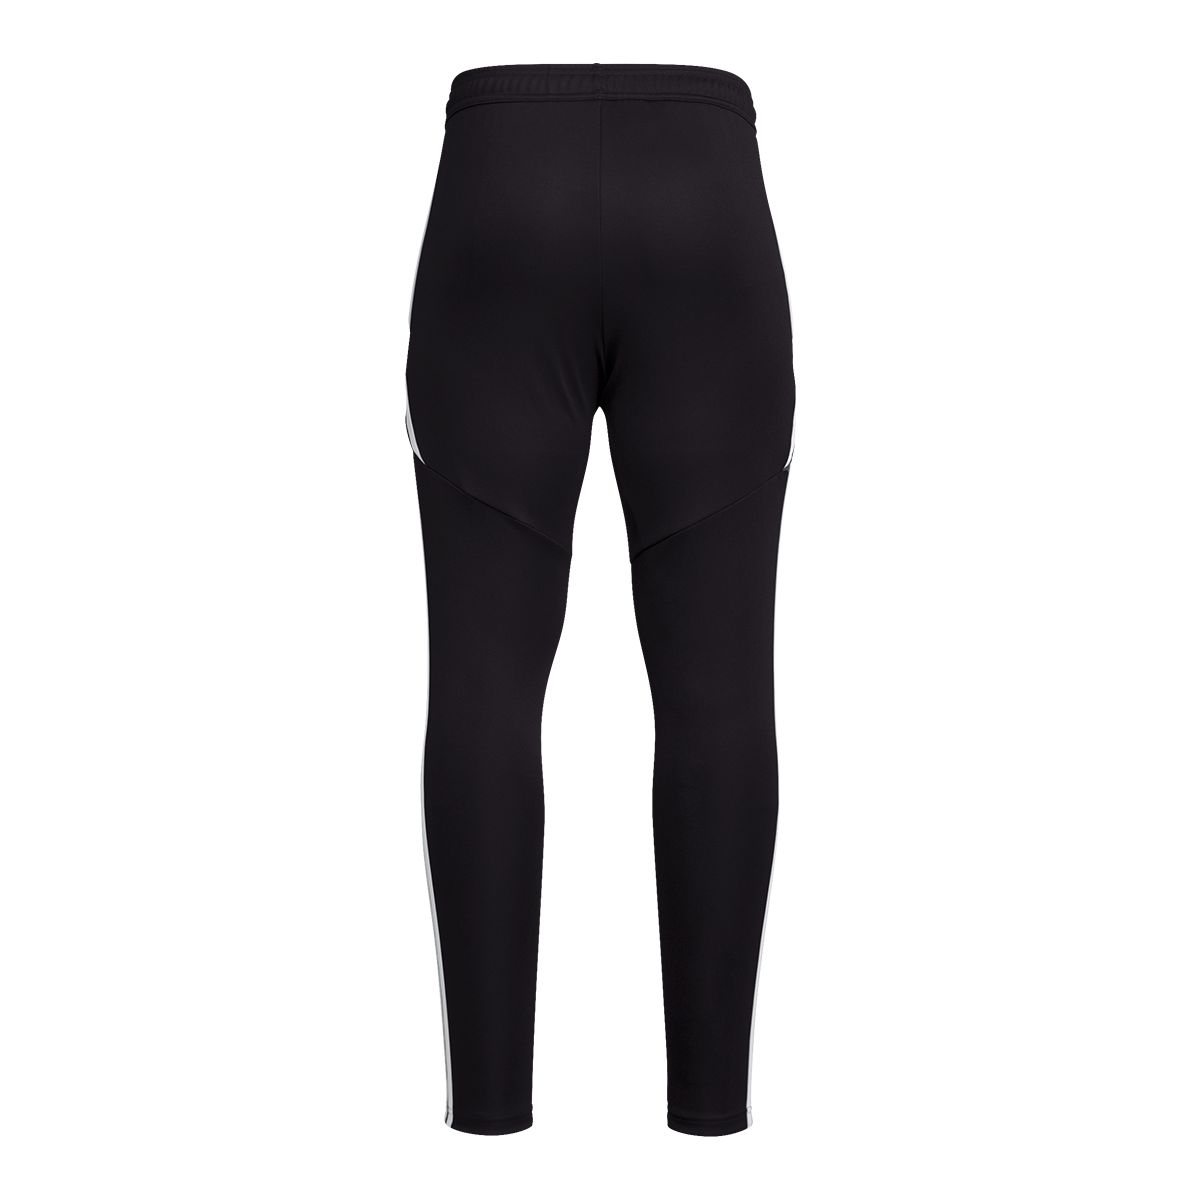 Adidas Athletic Track Pants Slim Skinny Boys Black Size M 10-12 20x25 EUC 